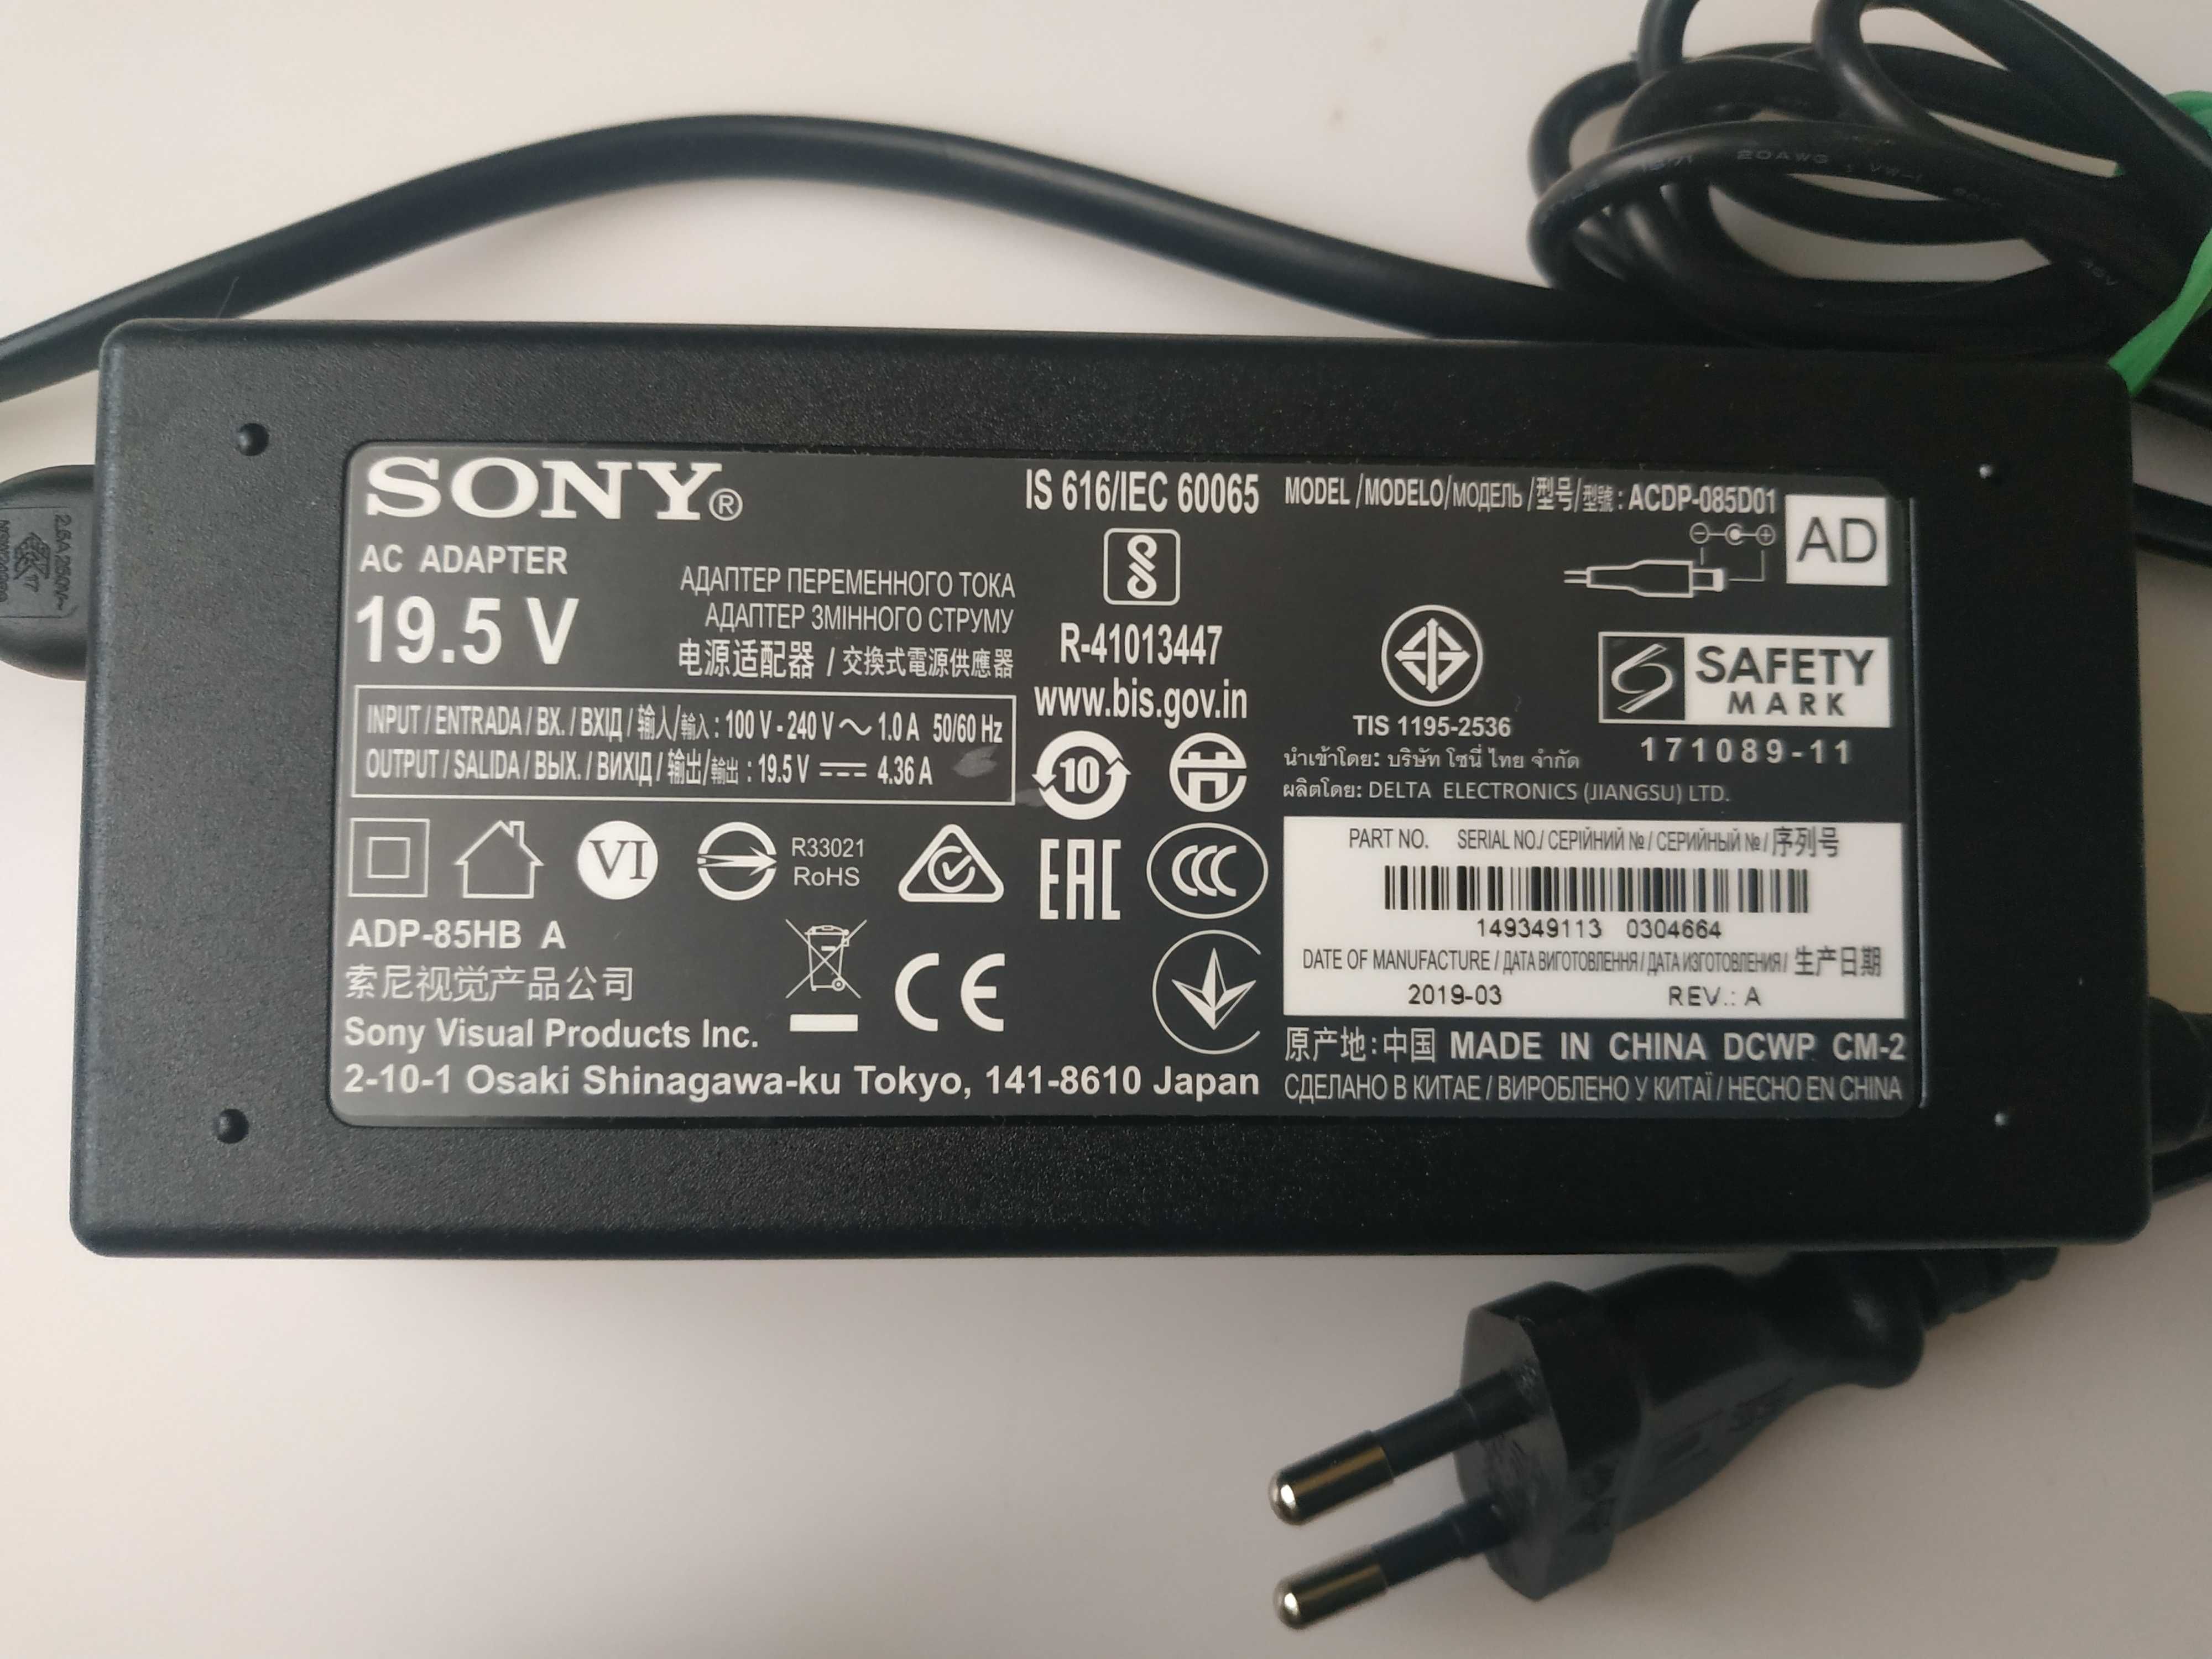 Блок живлення питания ТВ адаптер Sony ACDP-085D01, 19.5V, 4.36A, 85 Вт